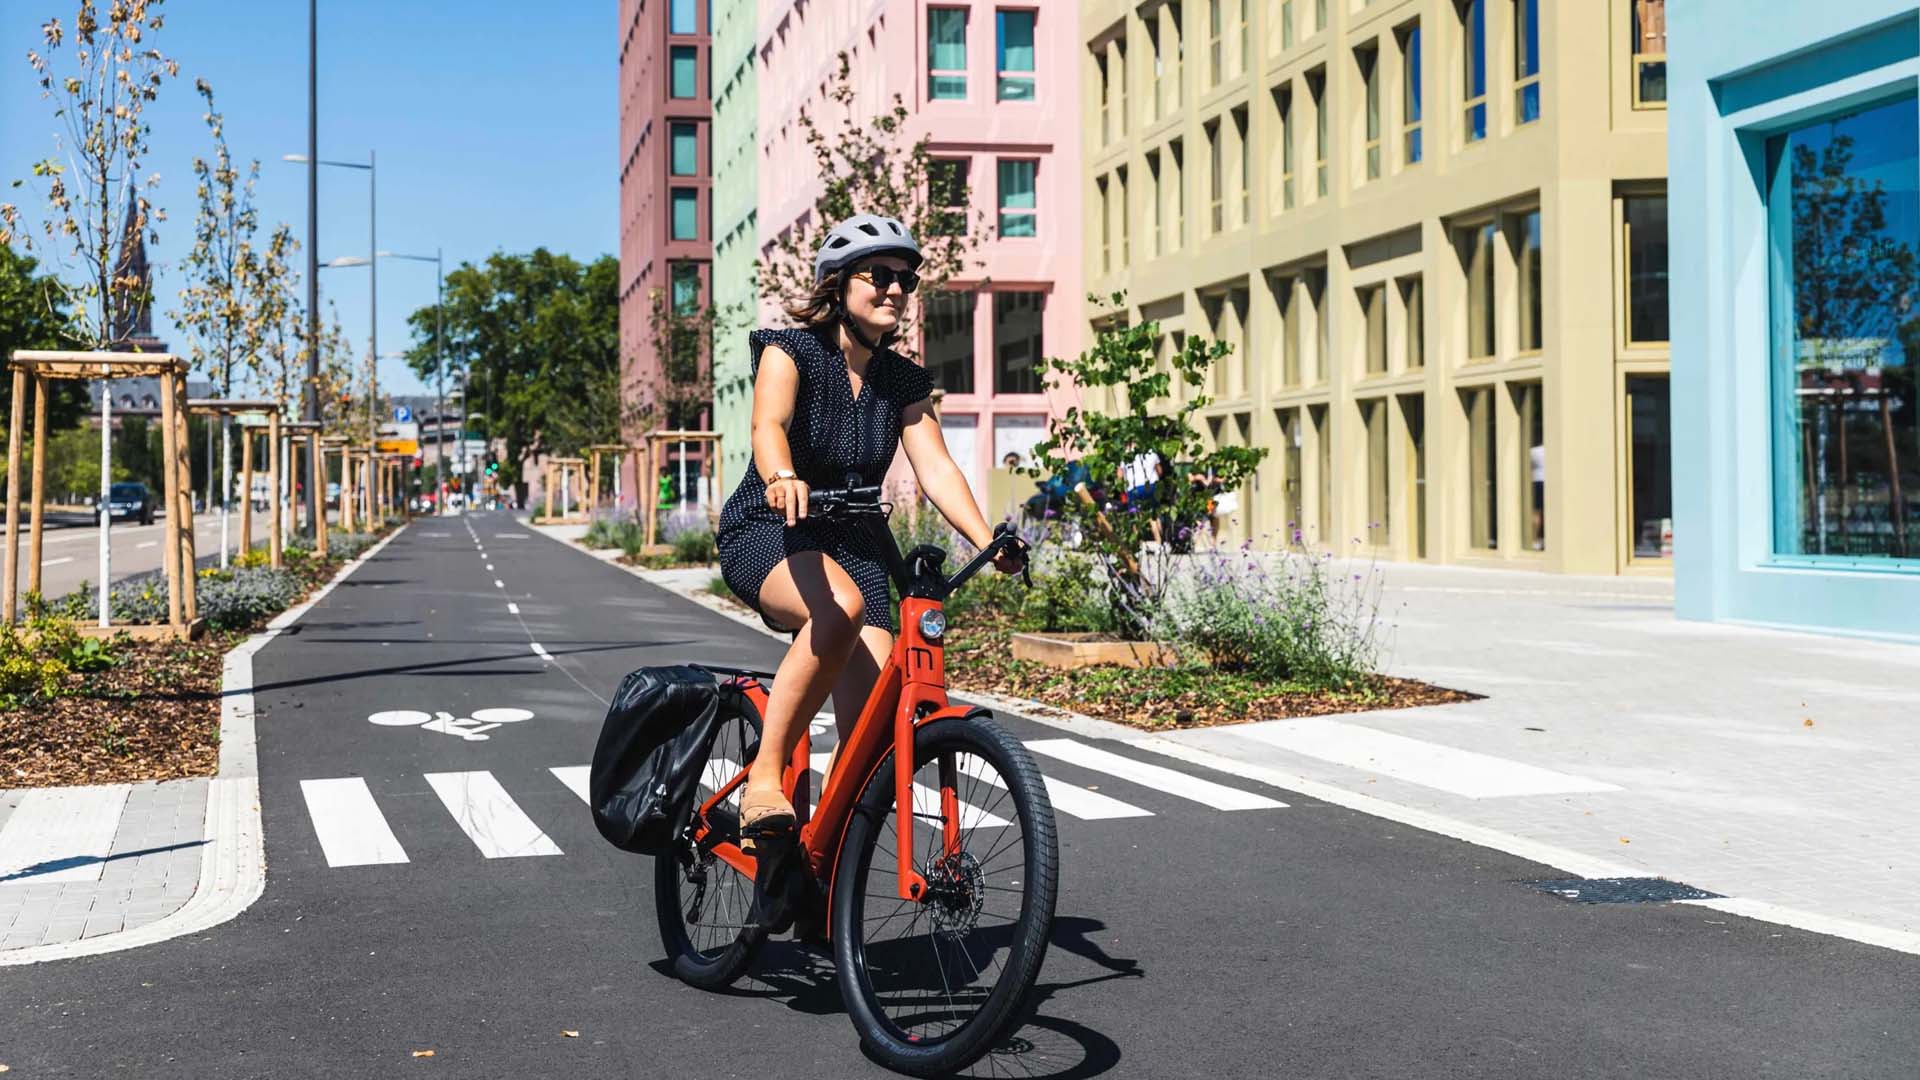 Accessoires et équipement pour vélo urbain